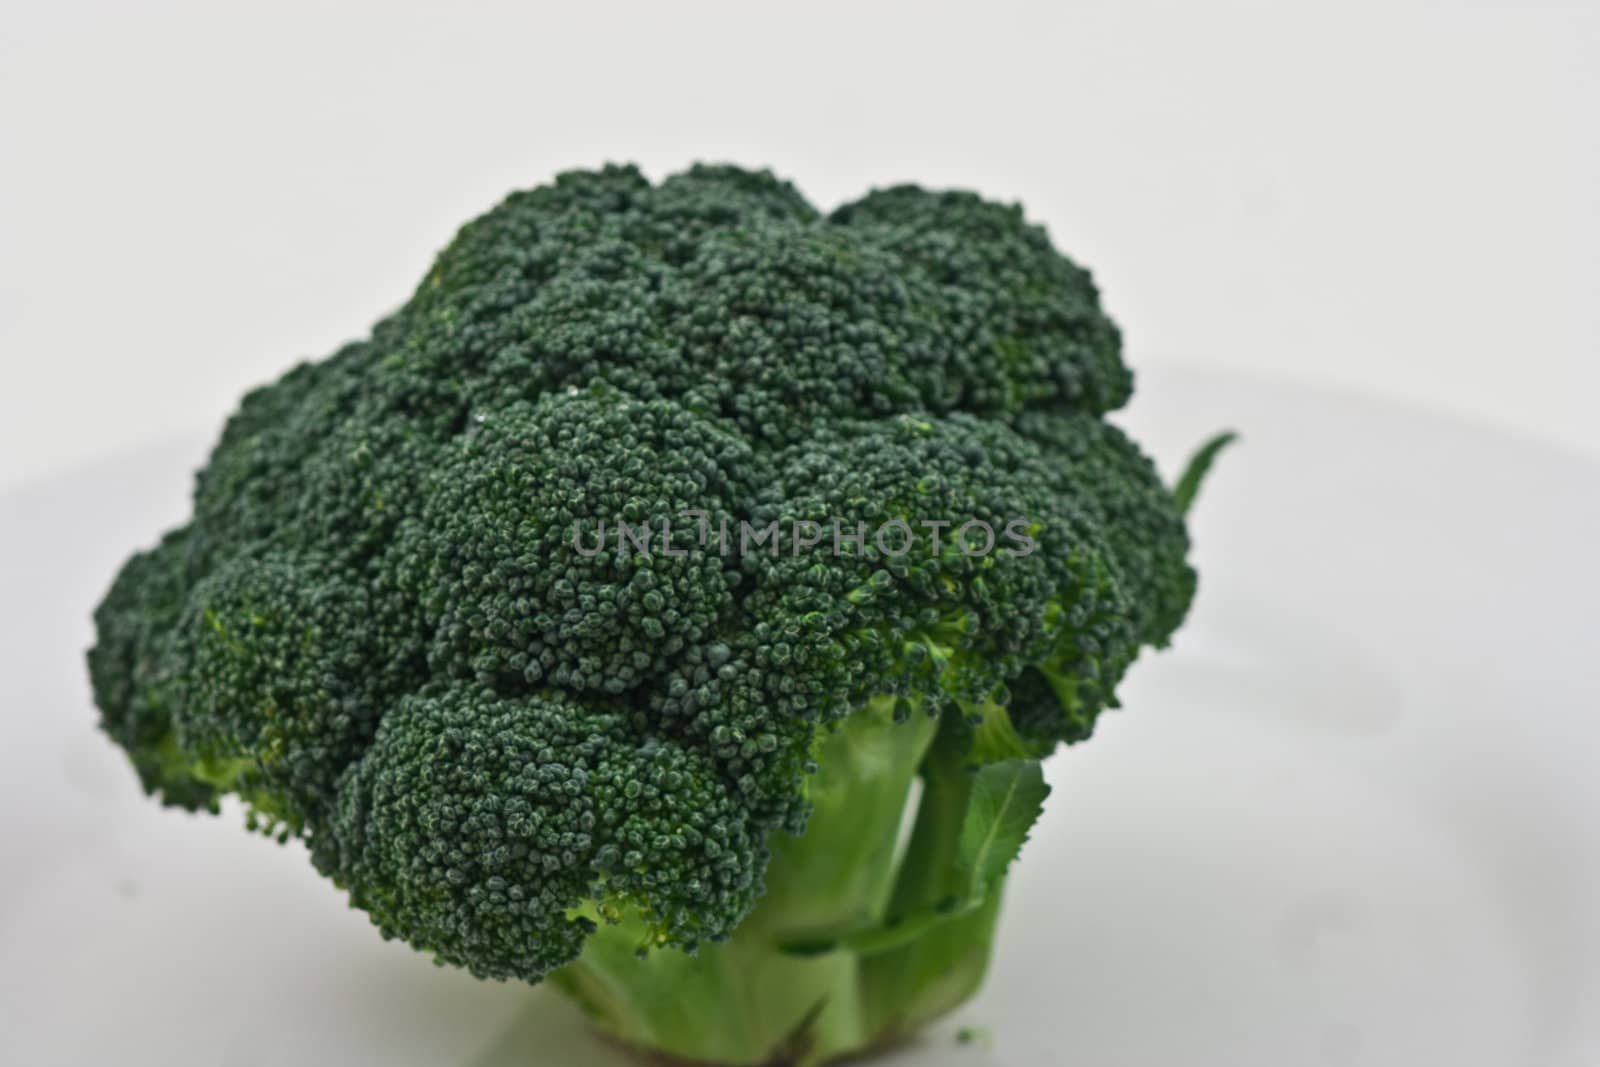 A head of Fresh Broccoli  by rothphotosc